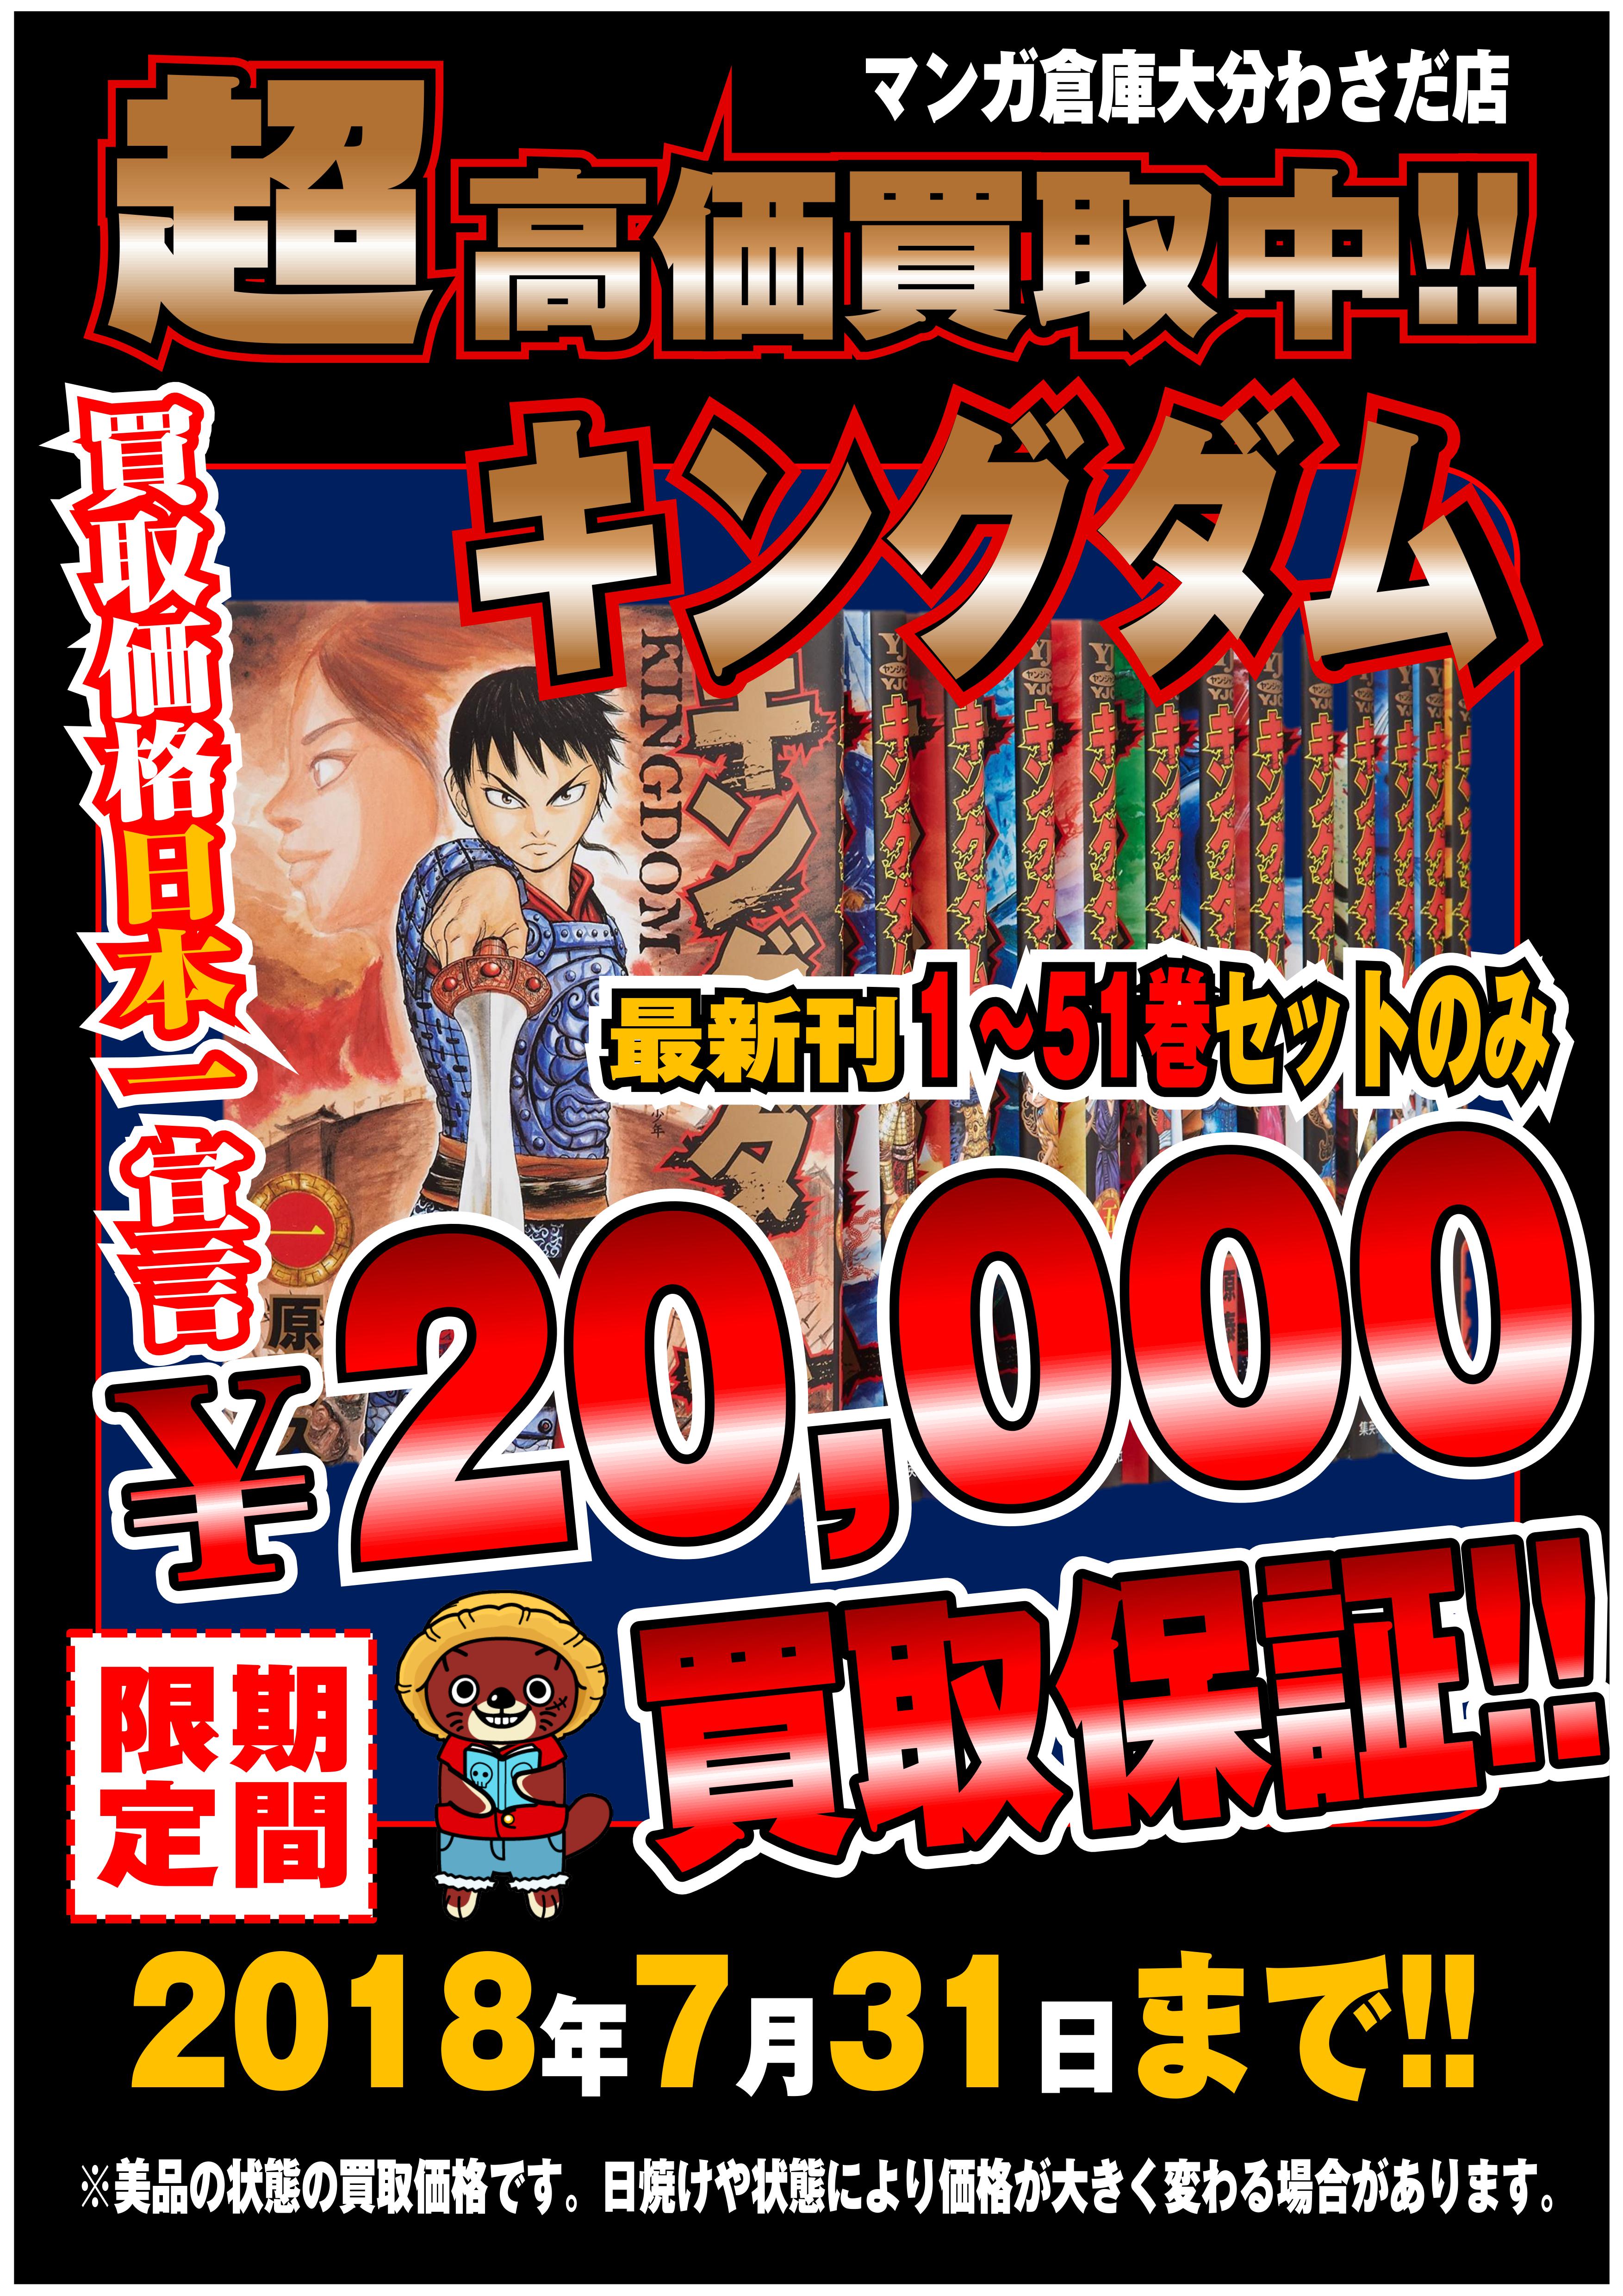 7 29 キングダム 買取価格日本一宣言 コミック キングダム 1 51巻セットを驚愕の 000円で買取致します マンガ倉庫大分わさだ店